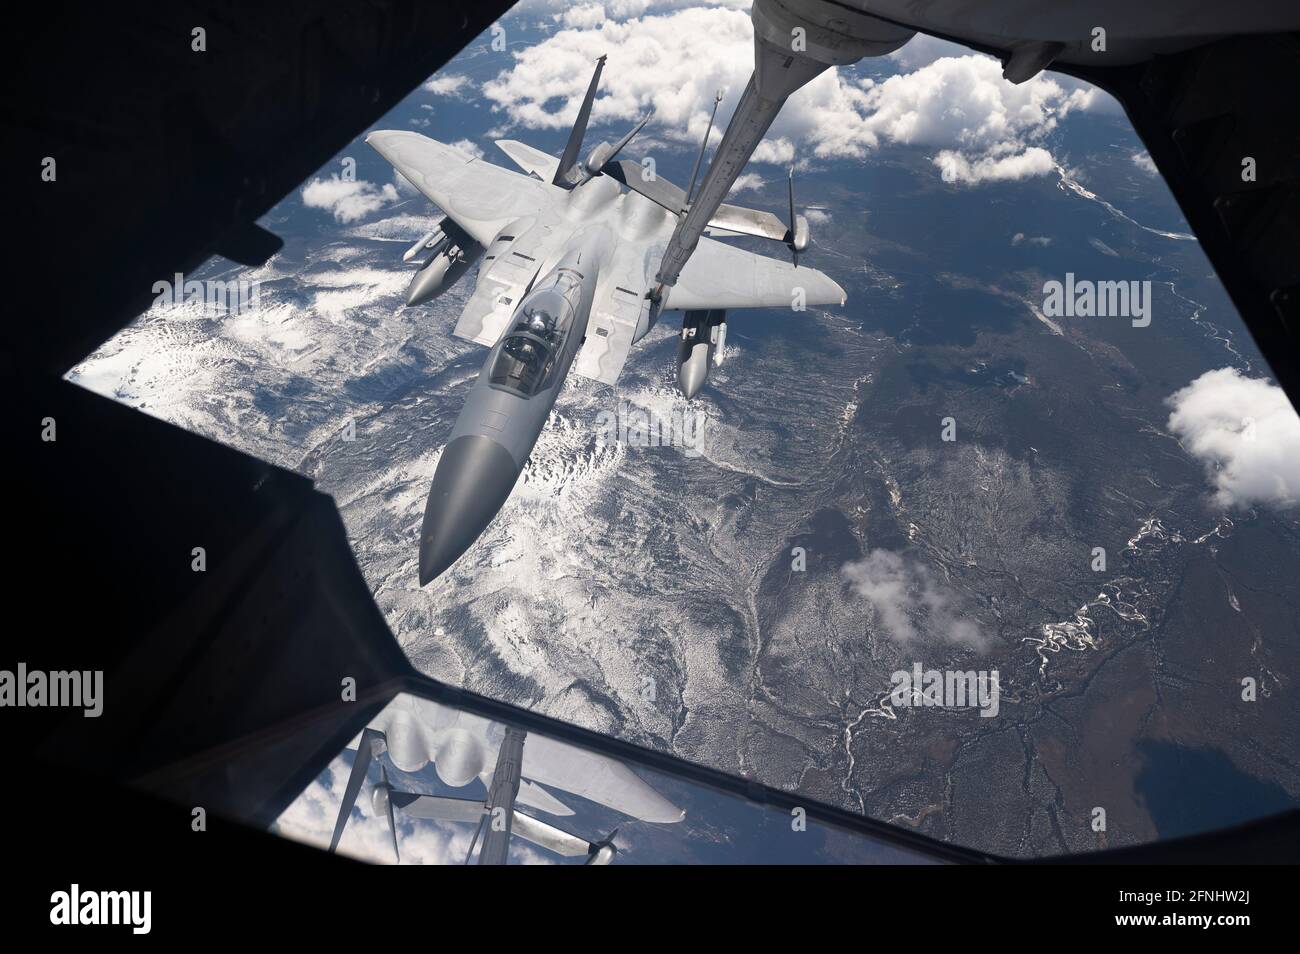 US Air Force F-15C Eagle-Kampfflugzeug, das dem 67. Jagdgeschwader zugewiesen wurde, betankt während der Übung Northern Edge 21 über dem Joint Pacific Alaska Range Complex am 13. Mai 2021 im Golf von Alaska von einem Air Force KC-10 Extender. Stockfoto